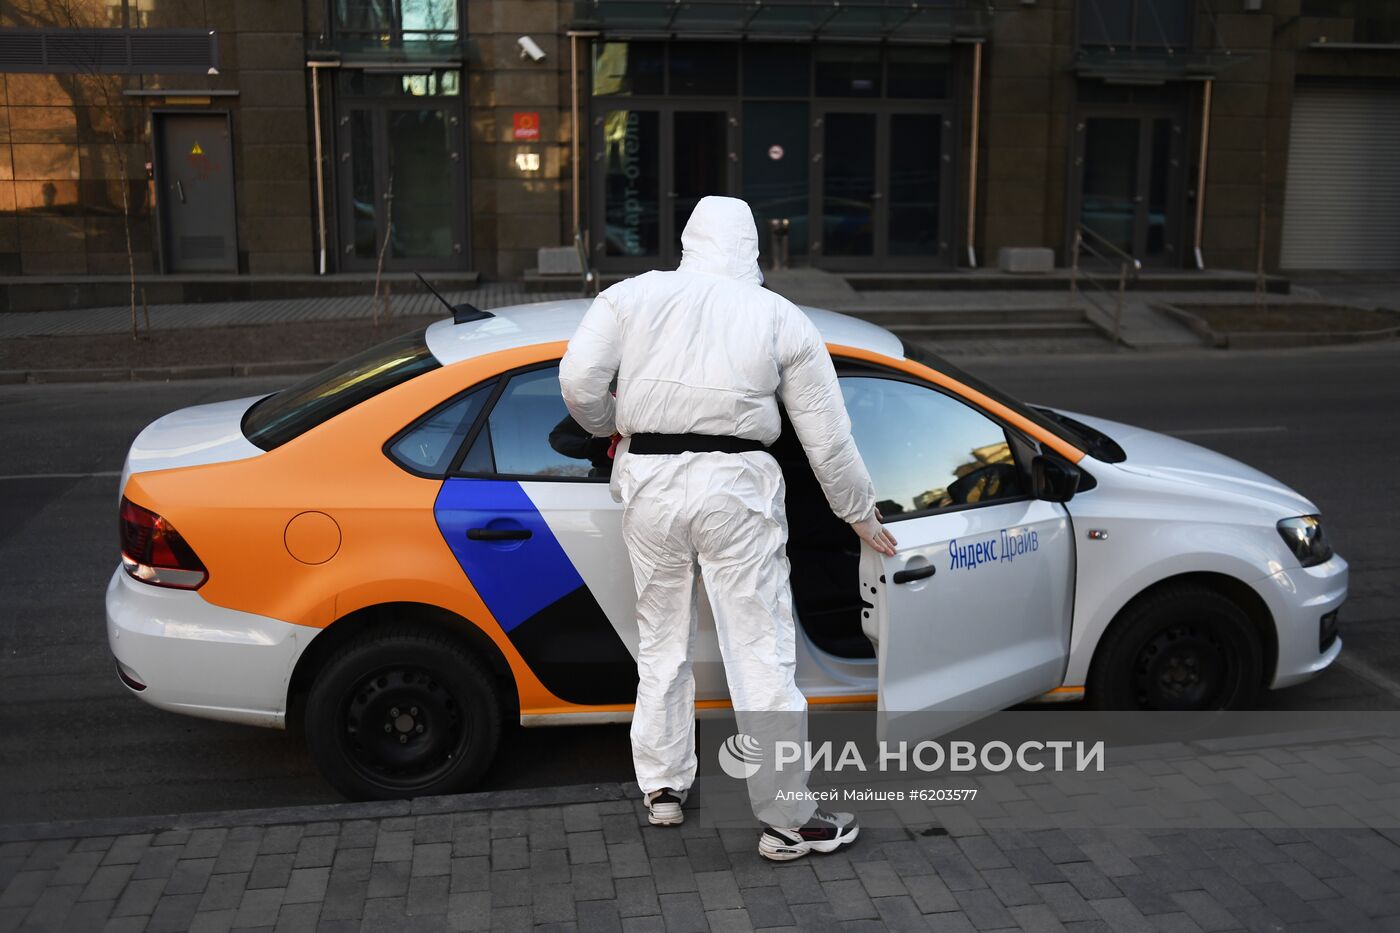 Запуск экспресс-дезинфекции автомобилей каршеринга "Яндекс. Драйв" в Москве